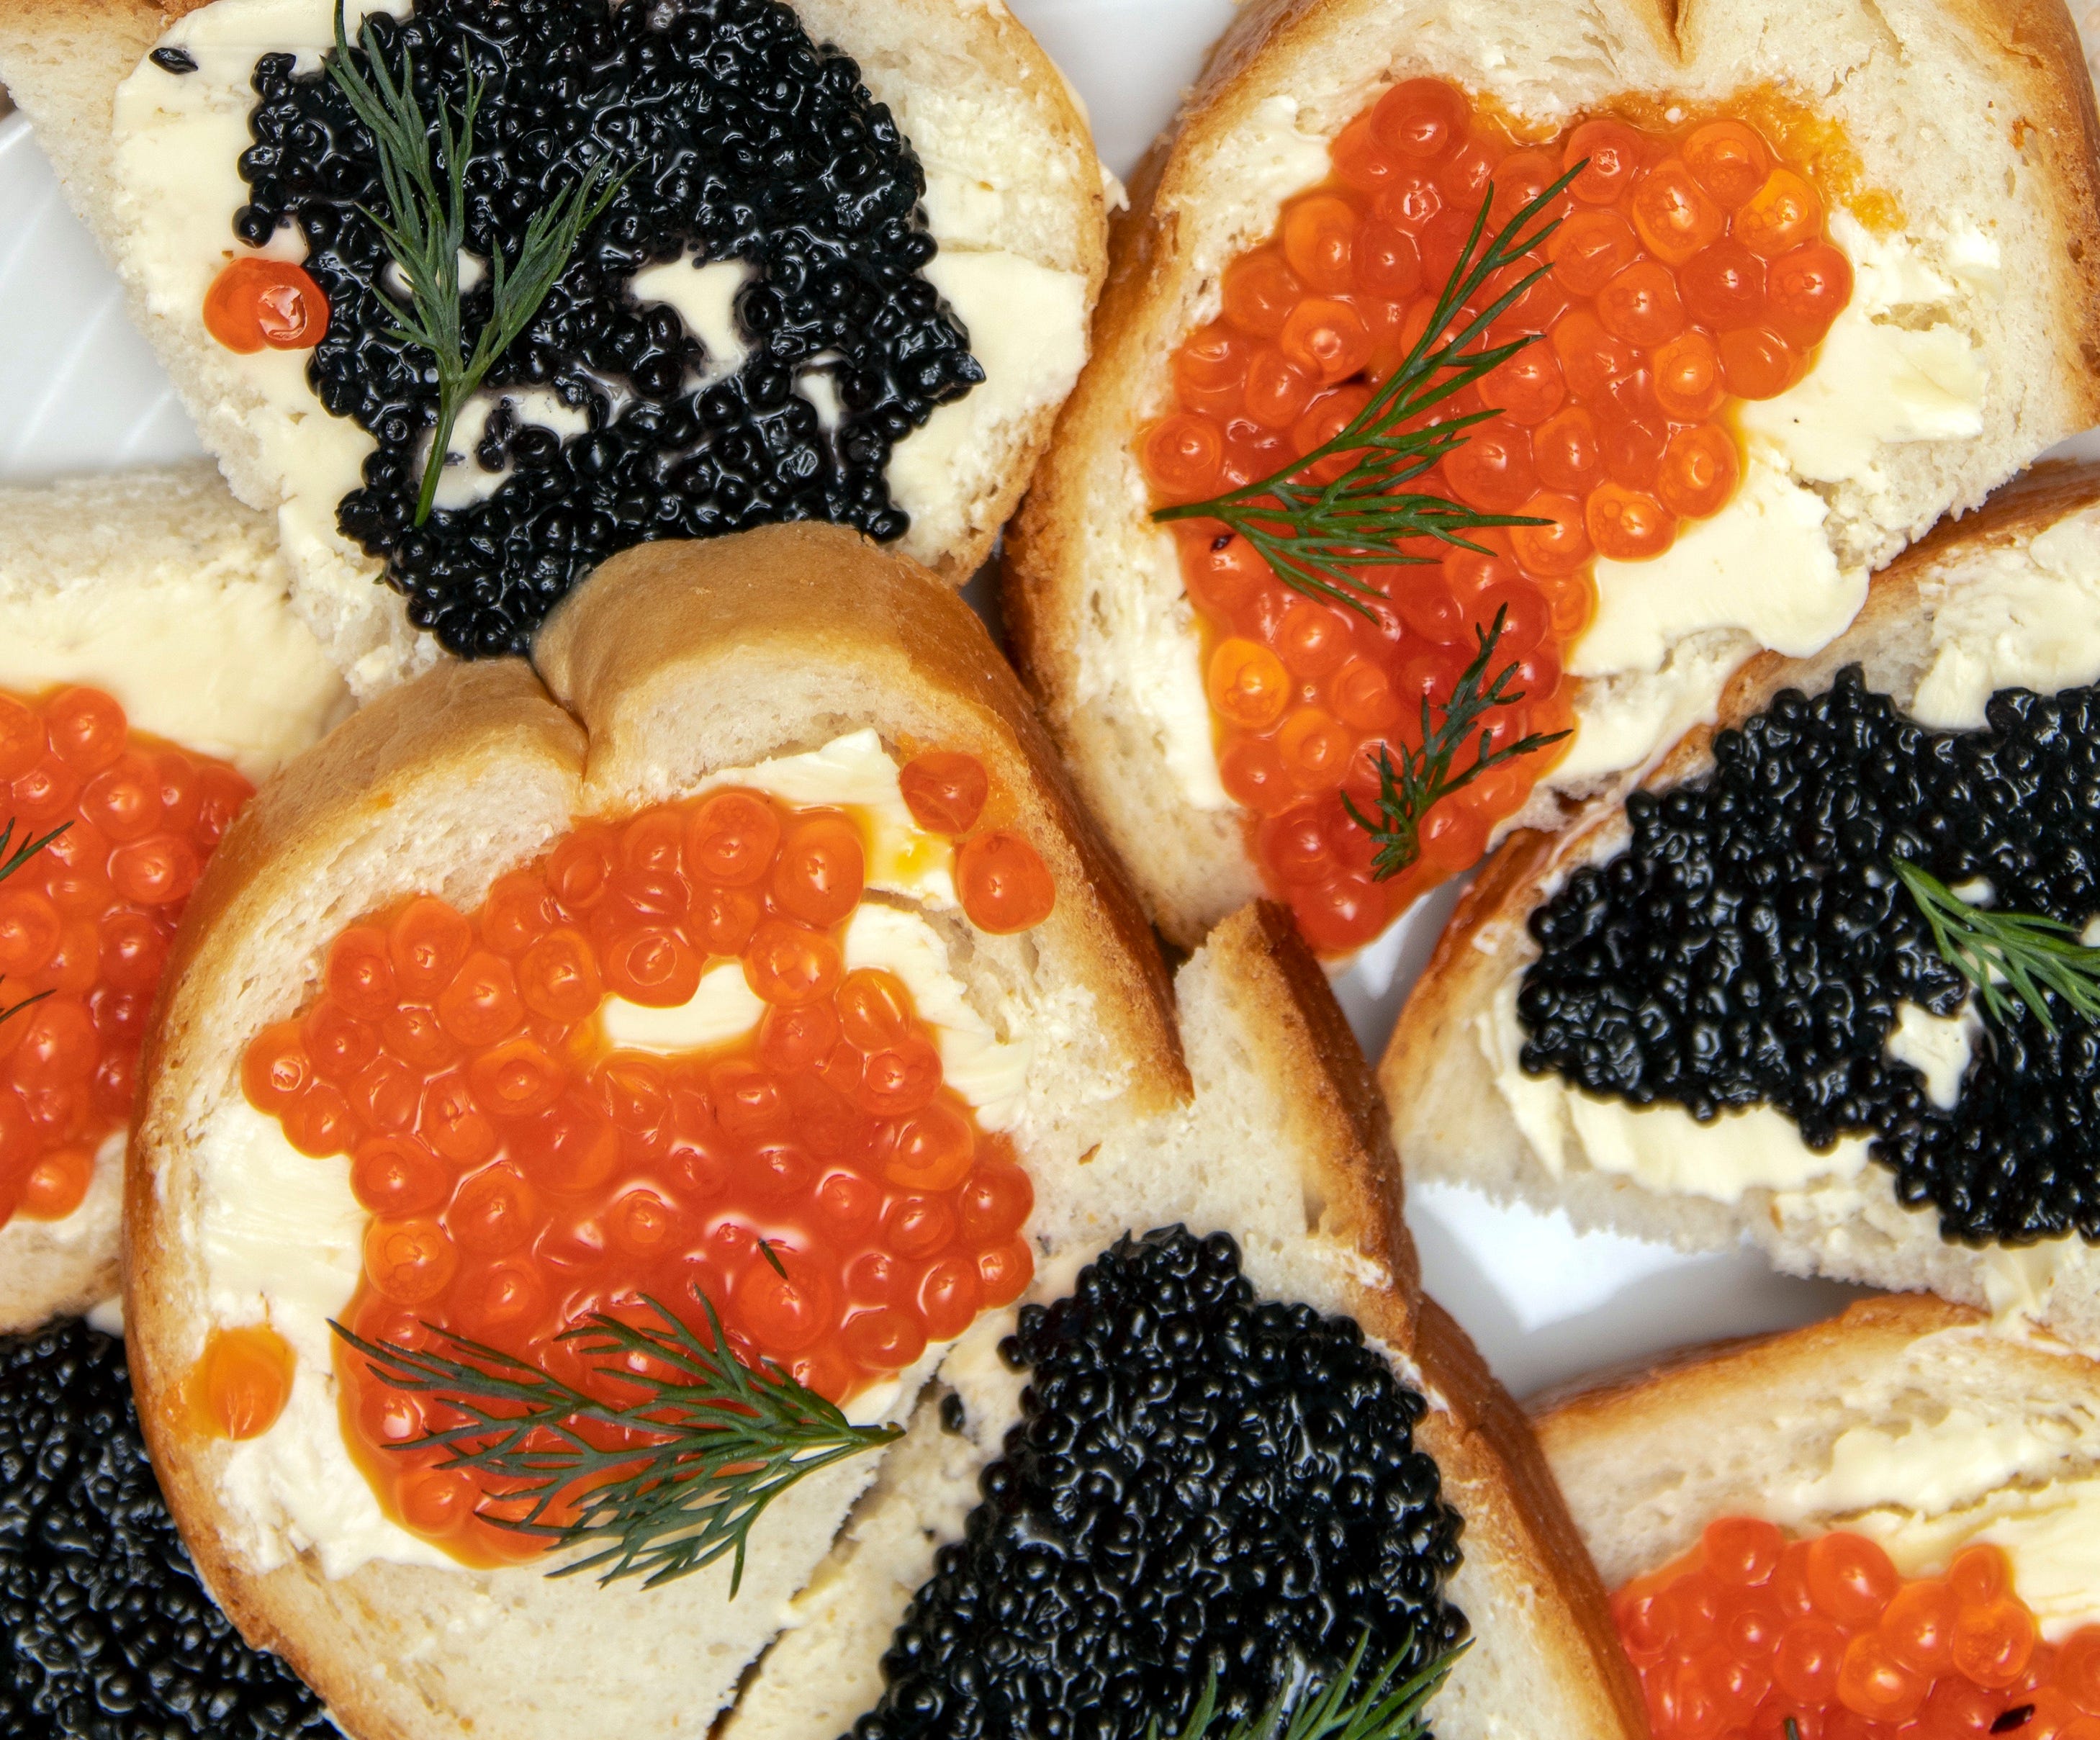 Beluga caviar - Wikipedia